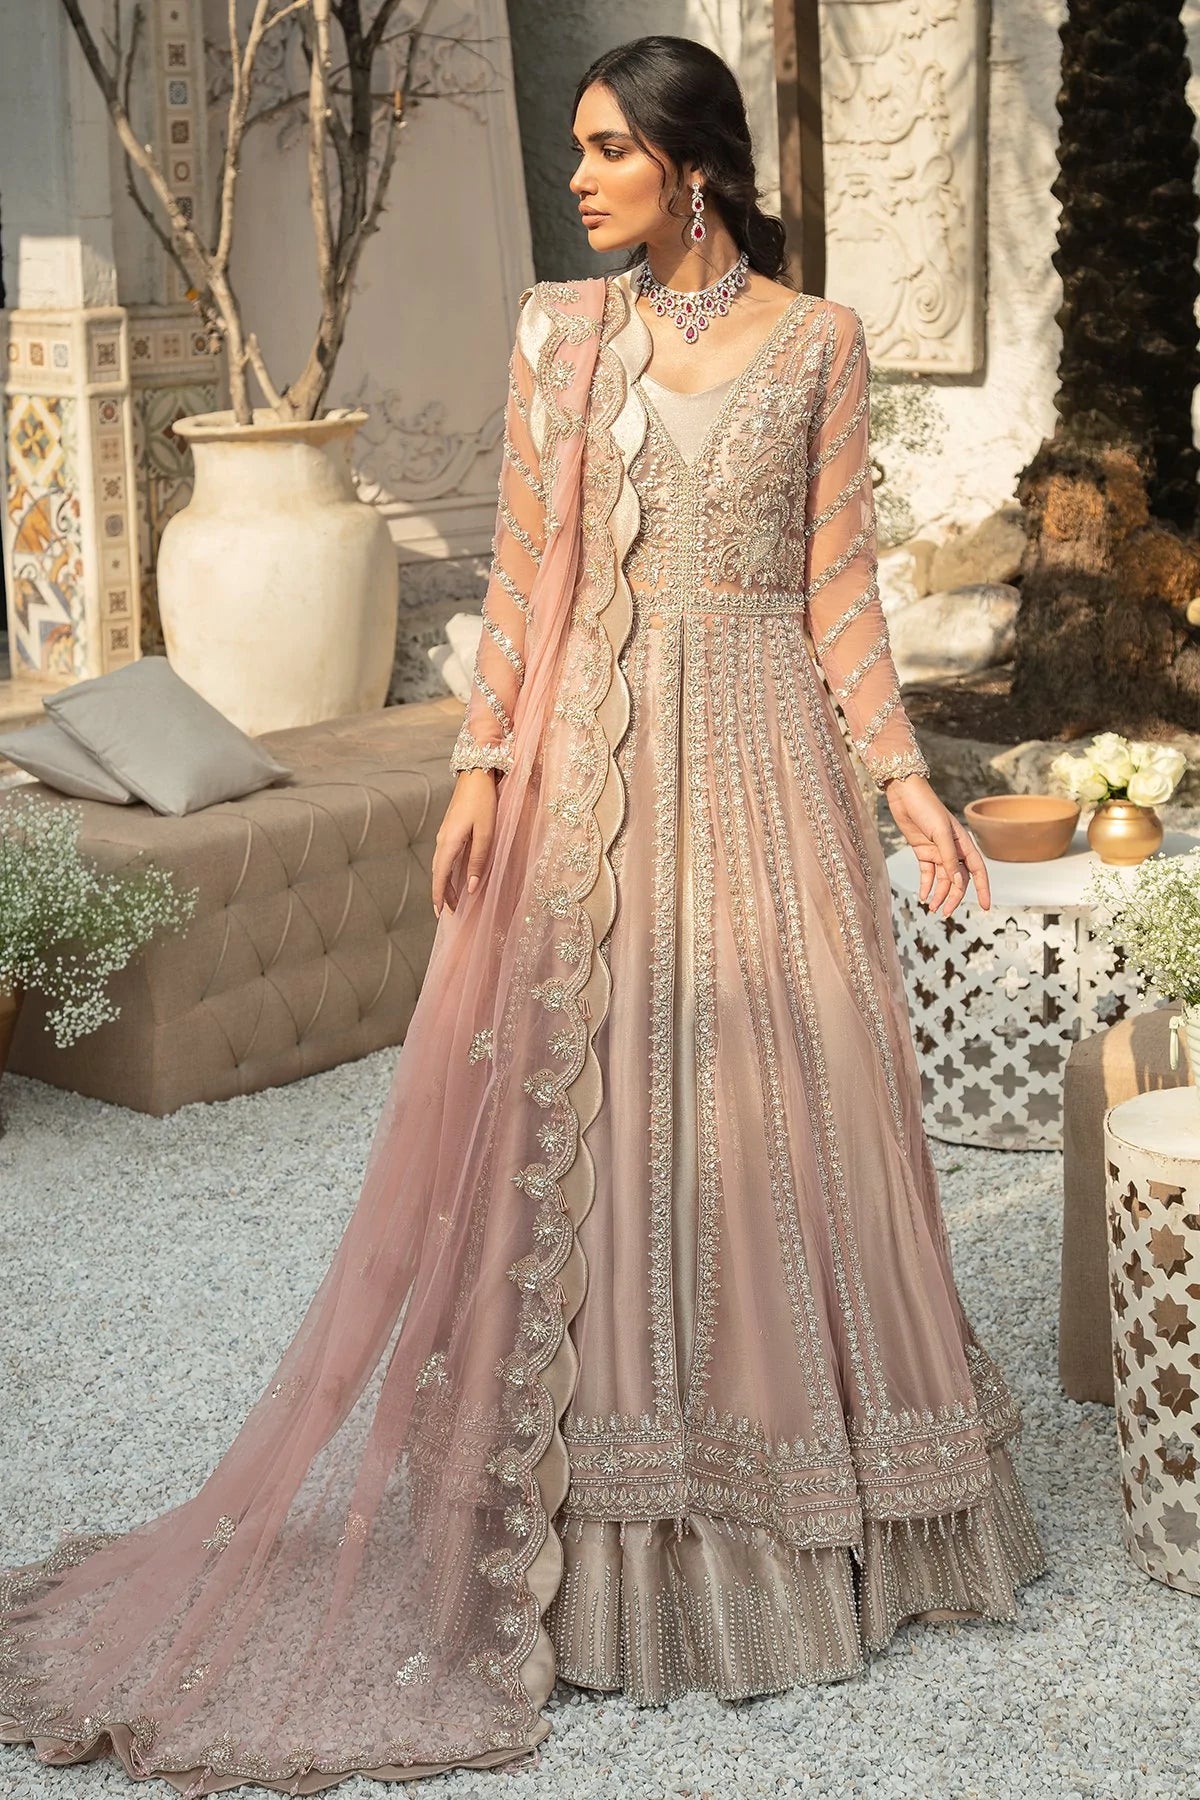 Lehenga and Front Open Gown Pakistani Wedding Dress | Pakistani wedding  dress, Pakistani wedding, Open gown style dresses pakistani